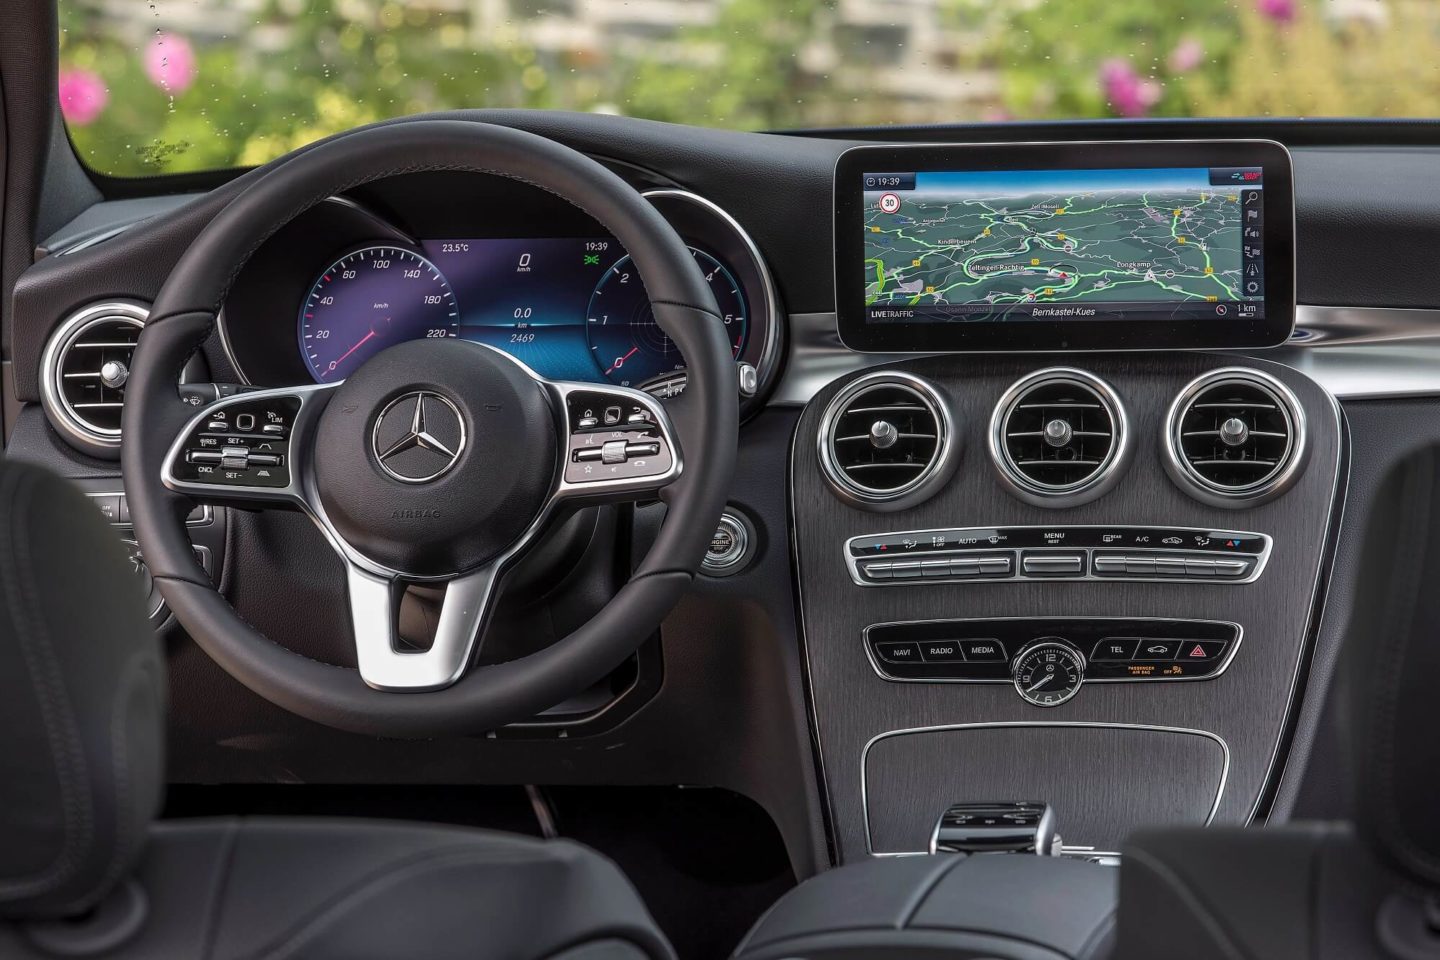 Mercedes-Benz Classe C interior 2020